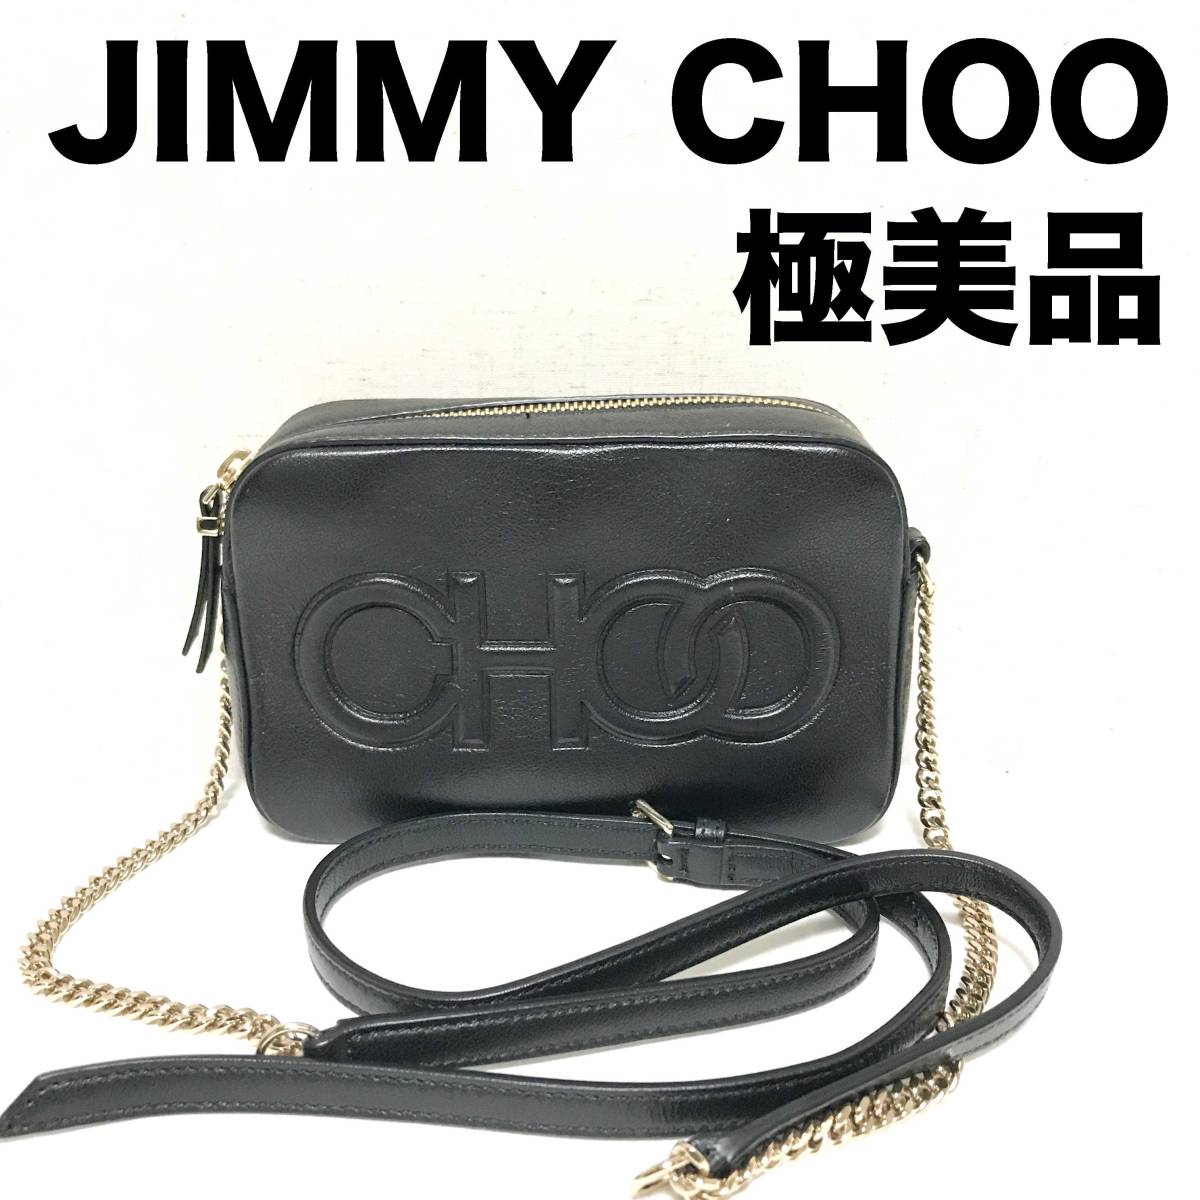 極美品 Jimmy Choo BALTI レザー ミニバッグ ショルダーバッグ チェーン ジミーチュー 黒ブラック HNAF2303-25-S8-M286J8